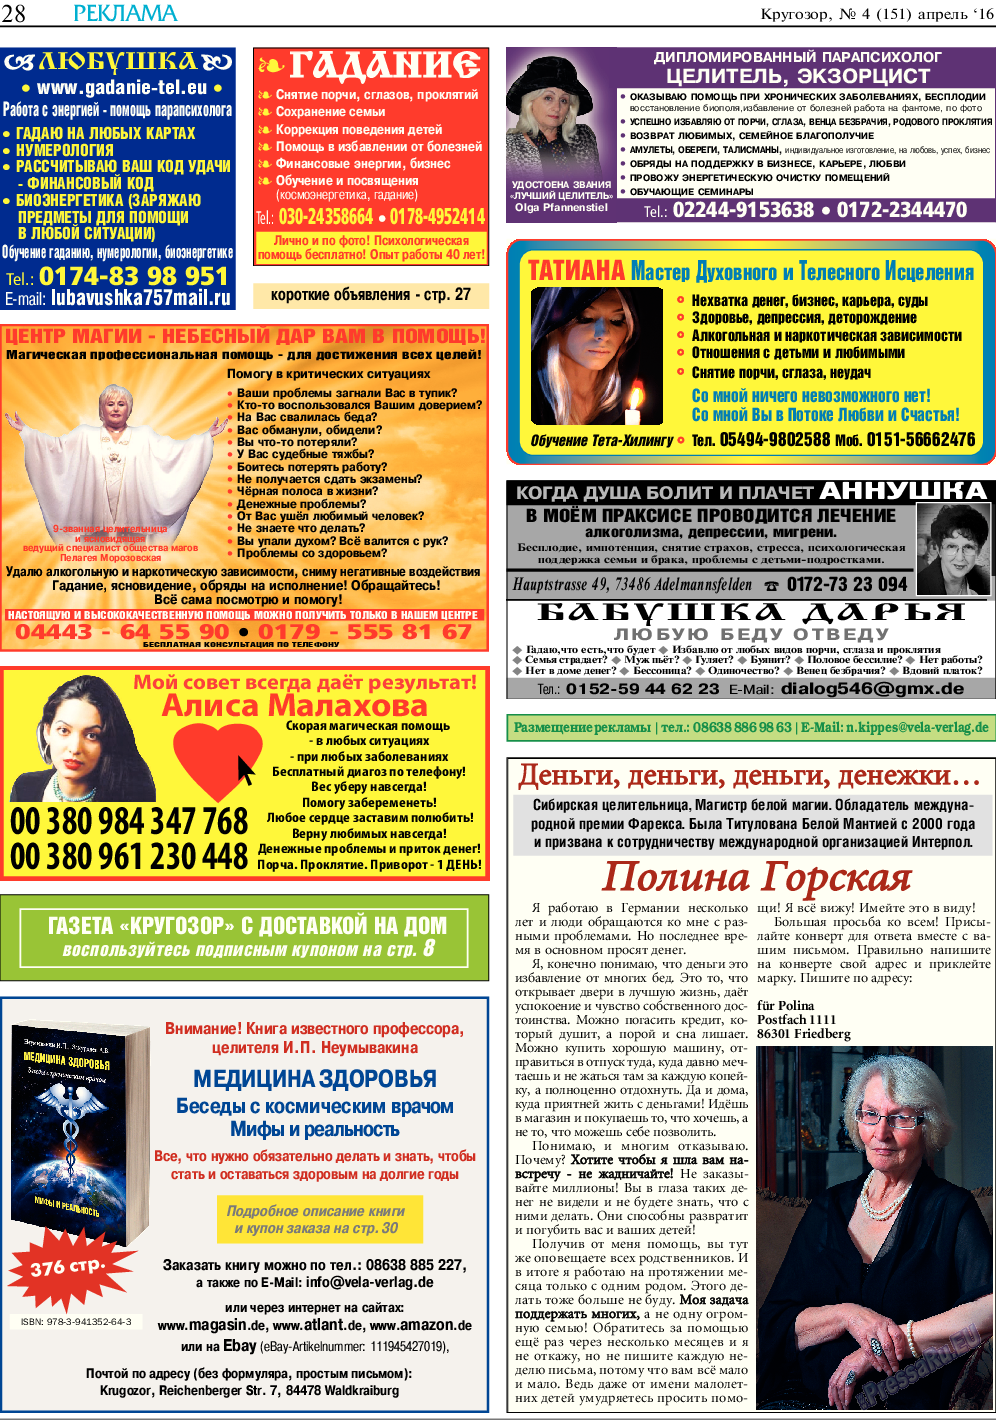 Кругозор, газета. 2016 №4 стр.28